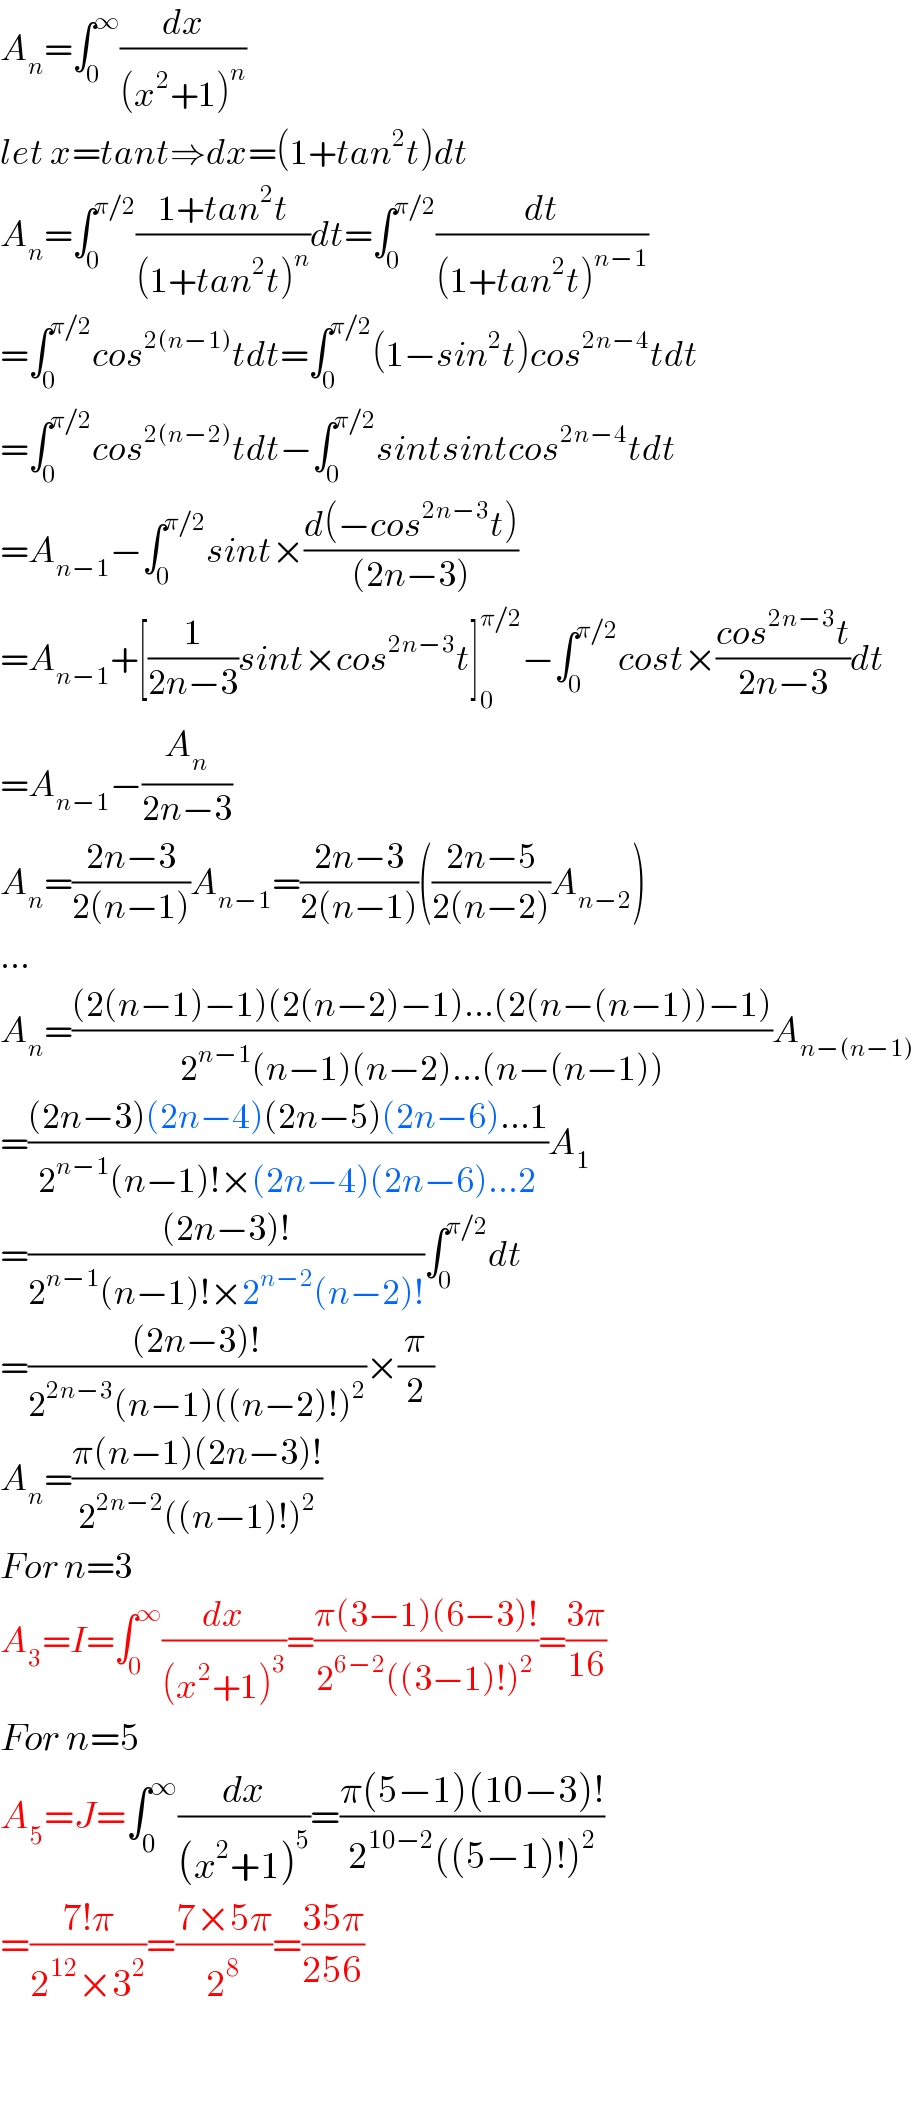 A_n =∫_0 ^∞ (dx/((x^2 +1)^n ))  let x=tant⇒dx=(1+tan^2 t)dt  A_n =∫_0 ^(π/2) ((1+tan^2 t)/((1+tan^2 t)^n ))dt=∫_0 ^(π/2) (dt/((1+tan^2 t)^(n−1) ))  =∫_0 ^(π/2) cos^(2(n−1)) tdt=∫_0 ^(π/2) (1−sin^2 t)cos^(2n−4) tdt  =∫_0 ^(π/2) cos^(2(n−2)) tdt−∫_0 ^(π/2) sintsintcos^(2n−4) tdt  =A_(n−1) −∫_0 ^(π/2) sint×((d(−cos^(2n−3) t))/((2n−3)))  =A_(n−1) +[(1/(2n−3))sint×cos^(2n−3) t]_0 ^(π/2) −∫_0 ^(π/2) cost×((cos^(2n−3) t)/(2n−3))dt  =A_(n−1) −(A_n /(2n−3))  A_n =((2n−3)/(2(n−1)))A_(n−1) =((2n−3)/(2(n−1)))(((2n−5)/(2(n−2)))A_(n−2) )  ...  A_n =(((2(n−1)−1)(2(n−2)−1)...(2(n−(n−1))−1))/(2^(n−1) (n−1)(n−2)...(n−(n−1))))A_(n−(n−1))   =(((2n−3)(2n−4)(2n−5)(2n−6)...1)/(2^(n−1) (n−1)!×(2n−4)(2n−6)...2))A_1   =(((2n−3)!)/(2^(n−1) (n−1)!×2^(n−2) (n−2)!))∫_0 ^(π/2) dt  =(((2n−3)!)/(2^(2n−3) (n−1)((n−2)!)^2 ))×(π/2)  A_n =((π(n−1)(2n−3)!)/(2^(2n−2) ((n−1)!)^2 ))  For n=3  A_3 =I=∫_0 ^∞ (dx/((x^2 +1)^3 ))=((π(3−1)(6−3)!)/(2^(6−2) ((3−1)!)^2 ))=((3π)/(16))  For n=5  A_5 =J=∫_0 ^∞ (dx/((x^2 +1)^5 ))=((π(5−1)(10−3)!)/(2^(10−2) ((5−1)!)^2 ))  =((7!π)/(2^(12) ×3^2 ))=((7×5π)/2^8 )=((35π)/(256))    